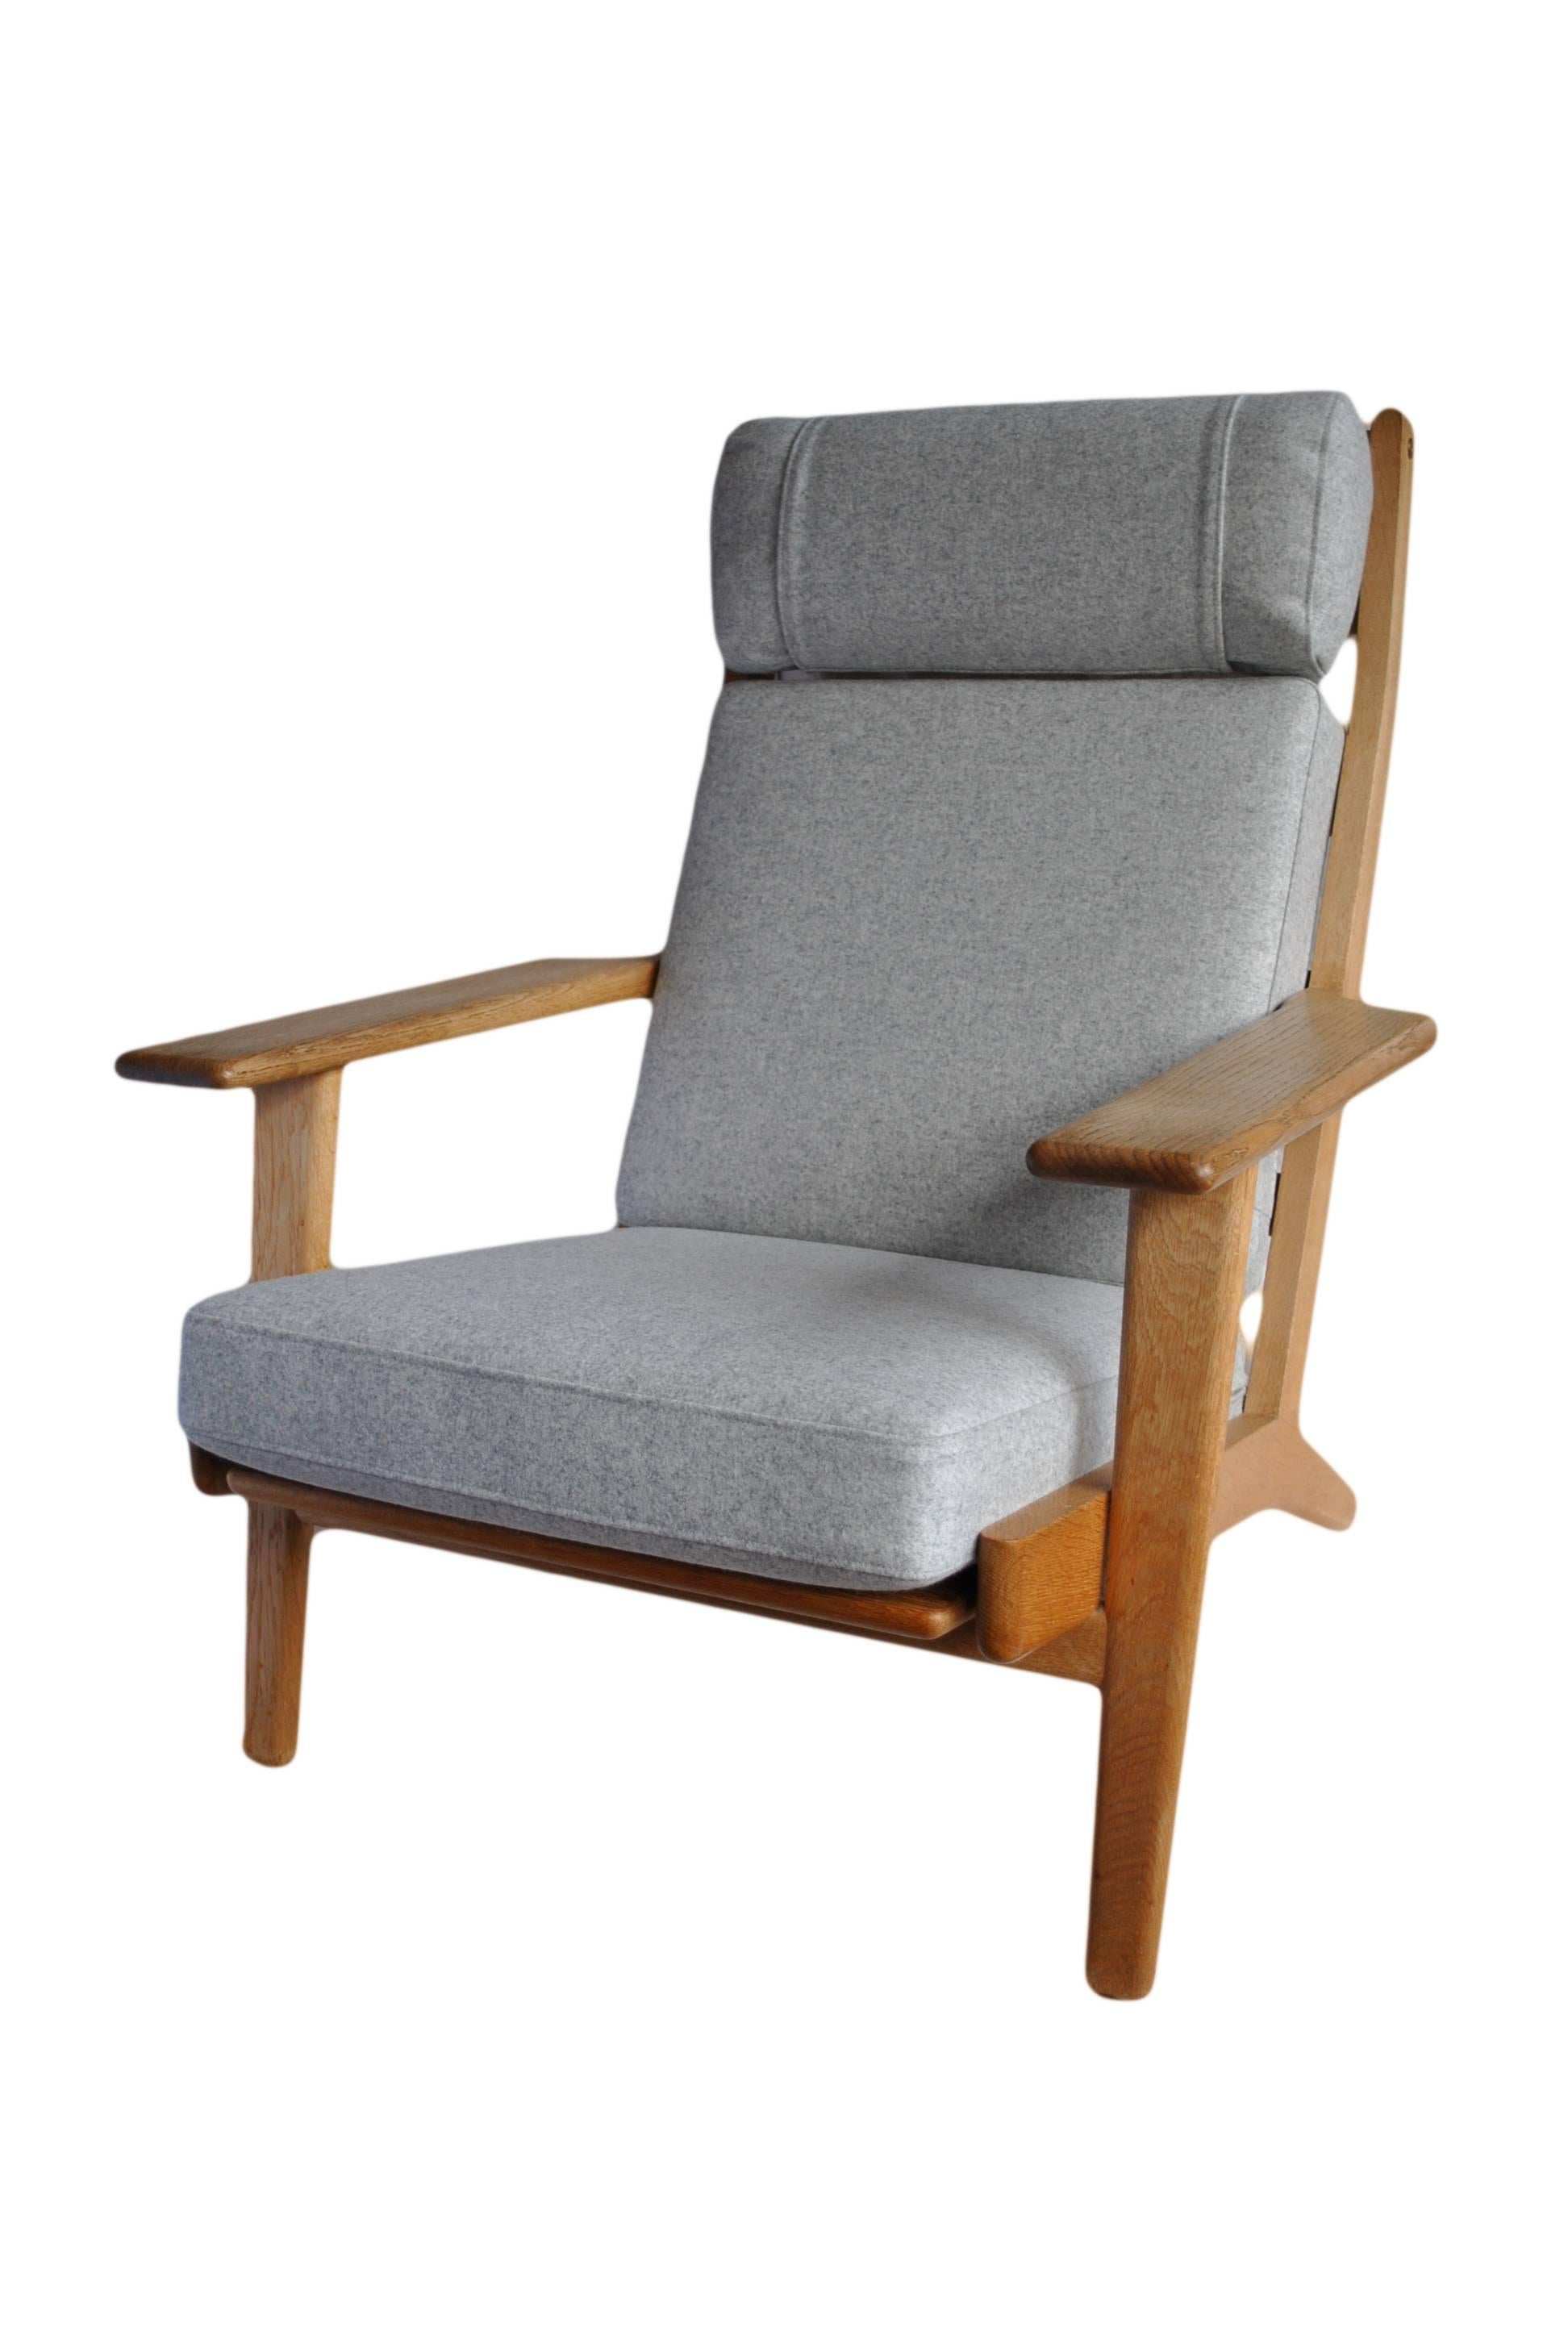 Danish Hans Wegner GE290 Lounge Chair, 1950s Original. Fully refurbished.